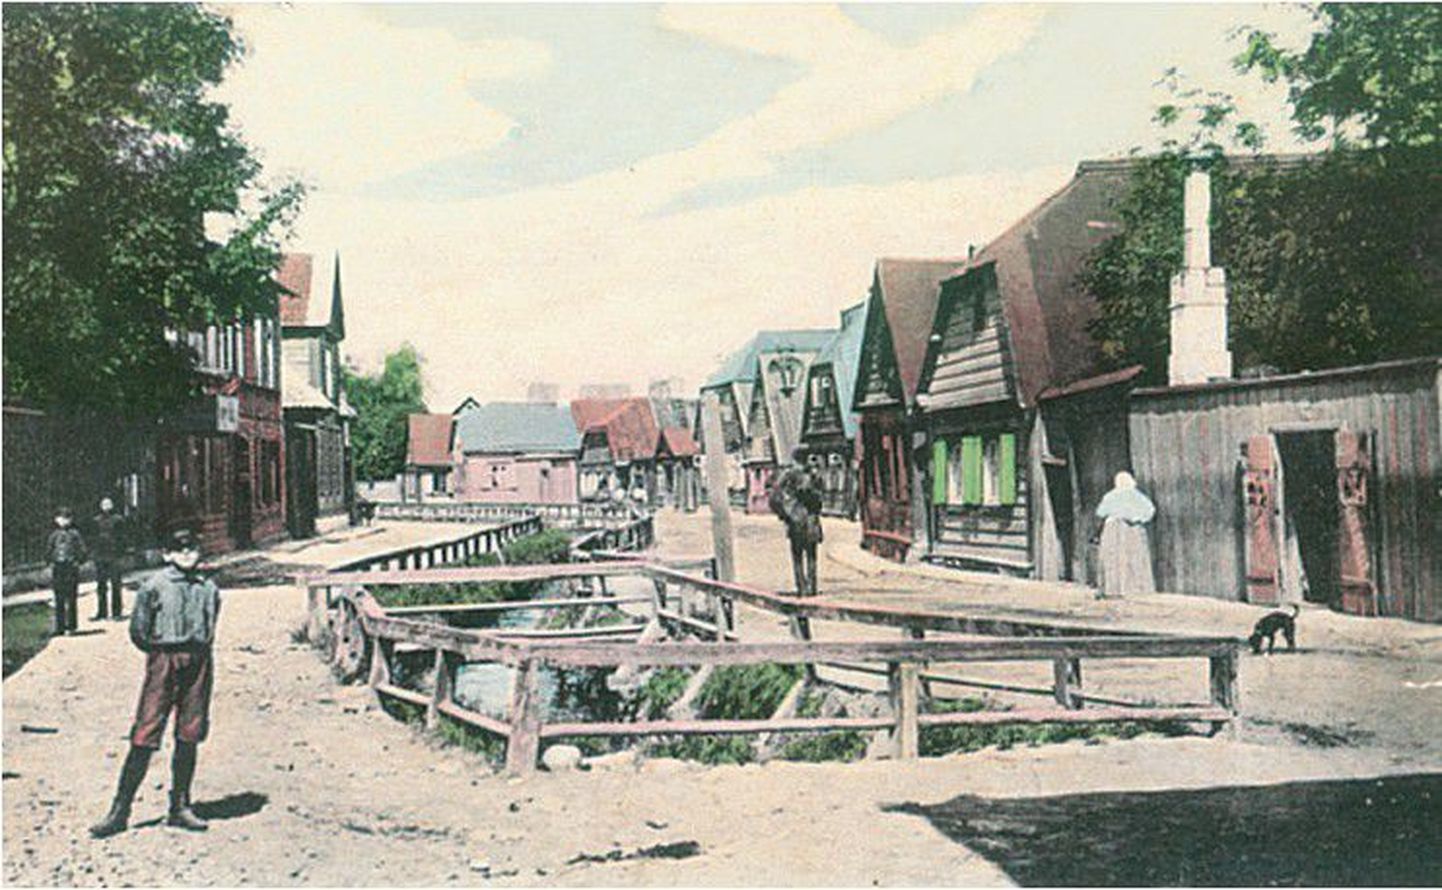 Härjapea jõe ümber tekkinud kvartal: Jõe tänav eelmise sajandi alguse postkaardil.